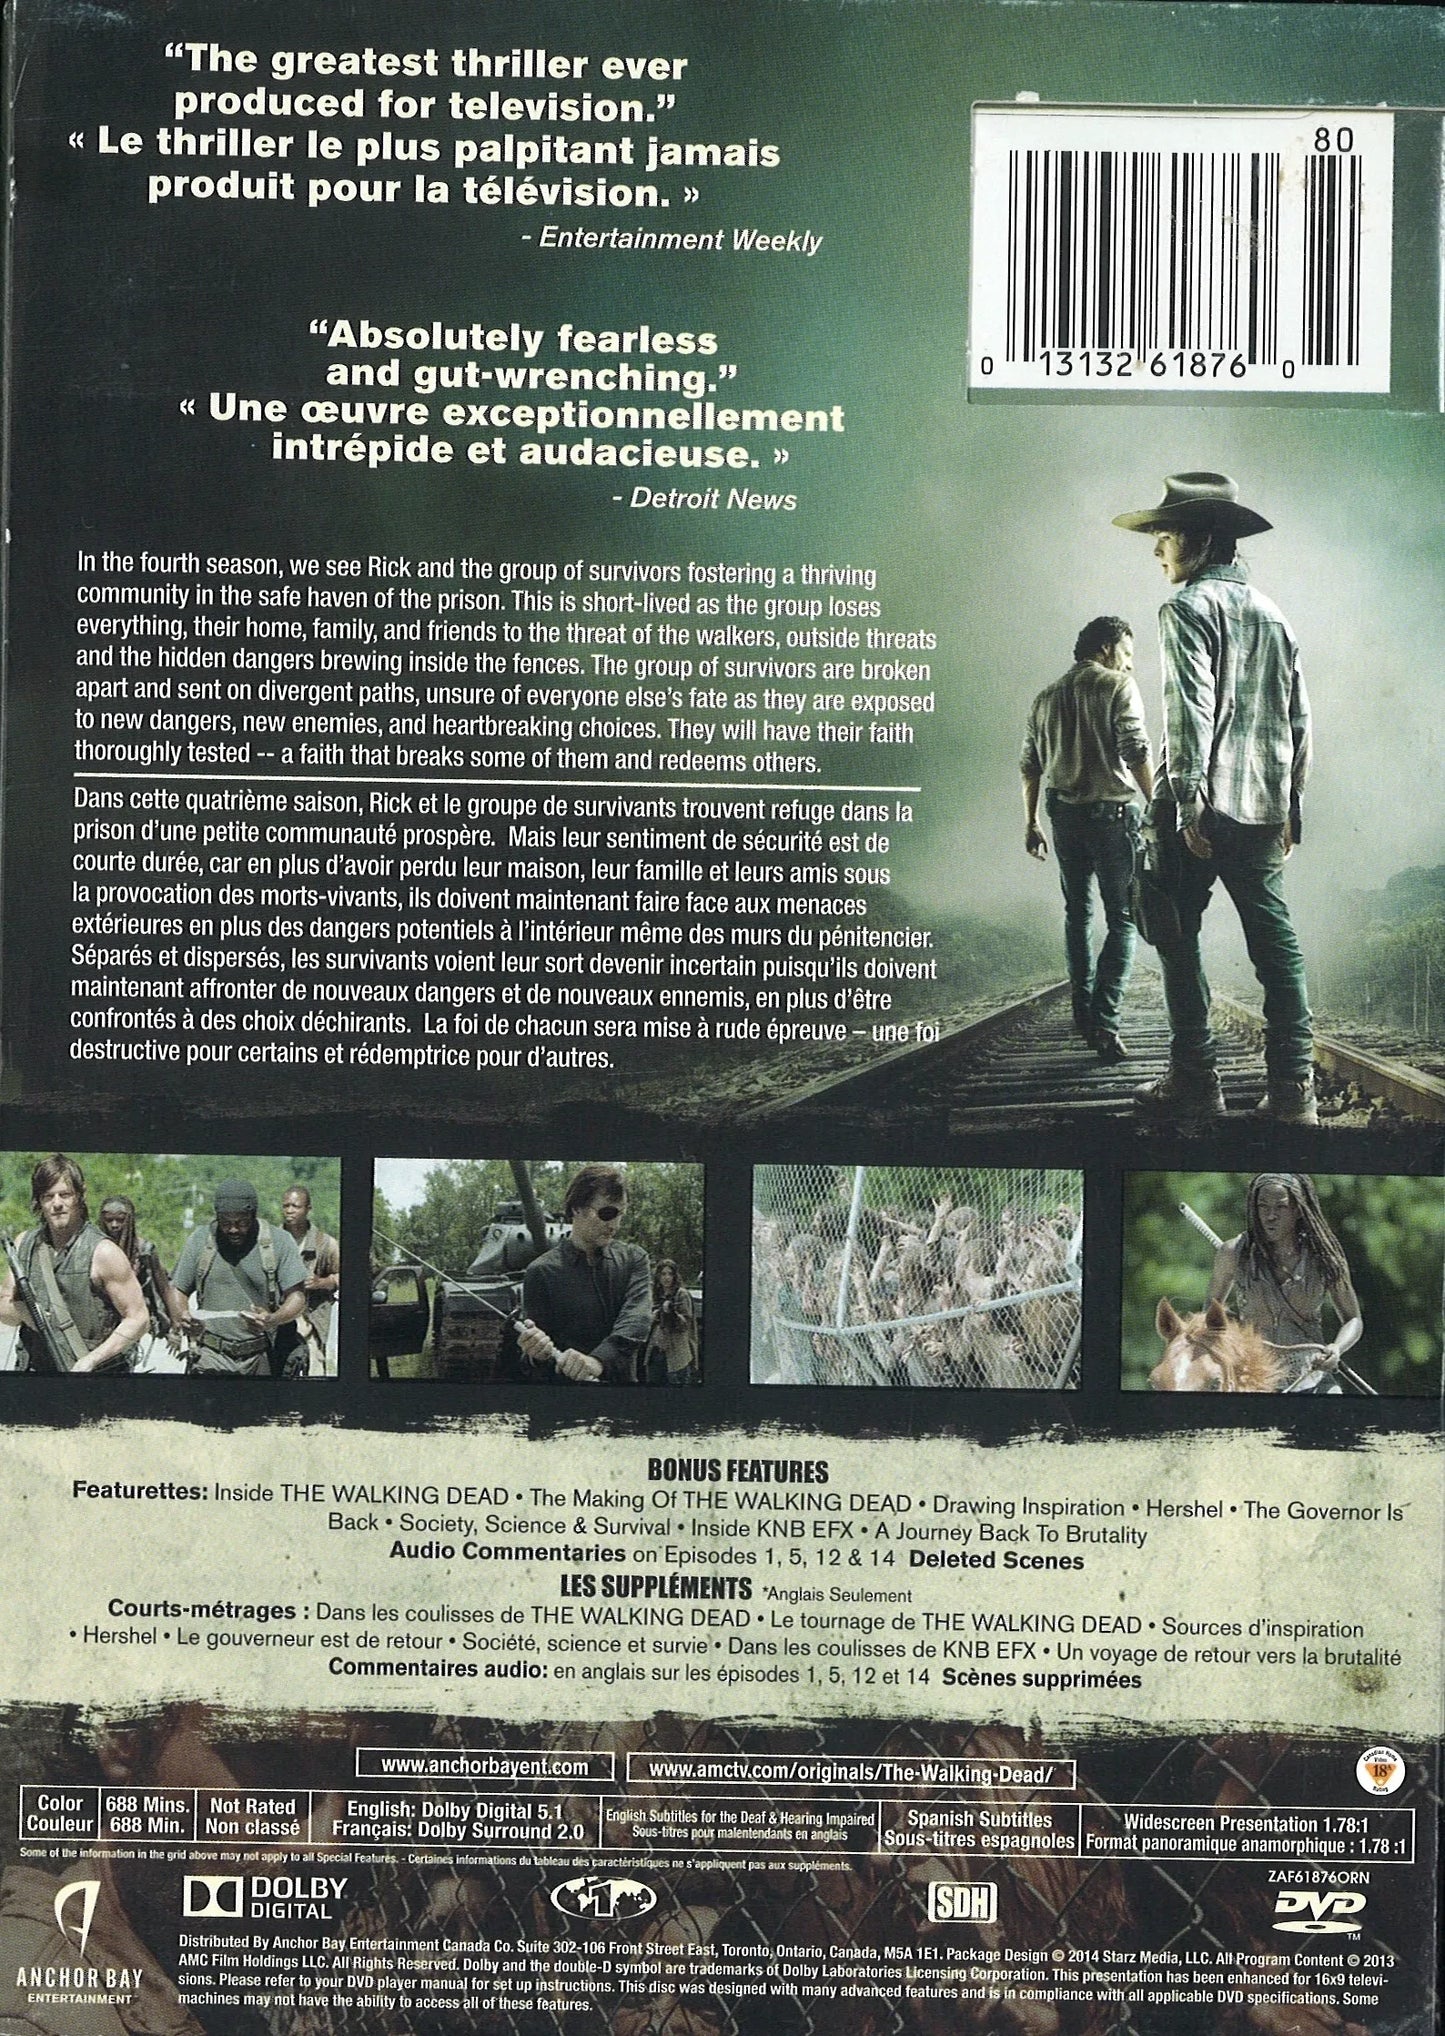 The Walking Dead: Complete 4th Season DVD